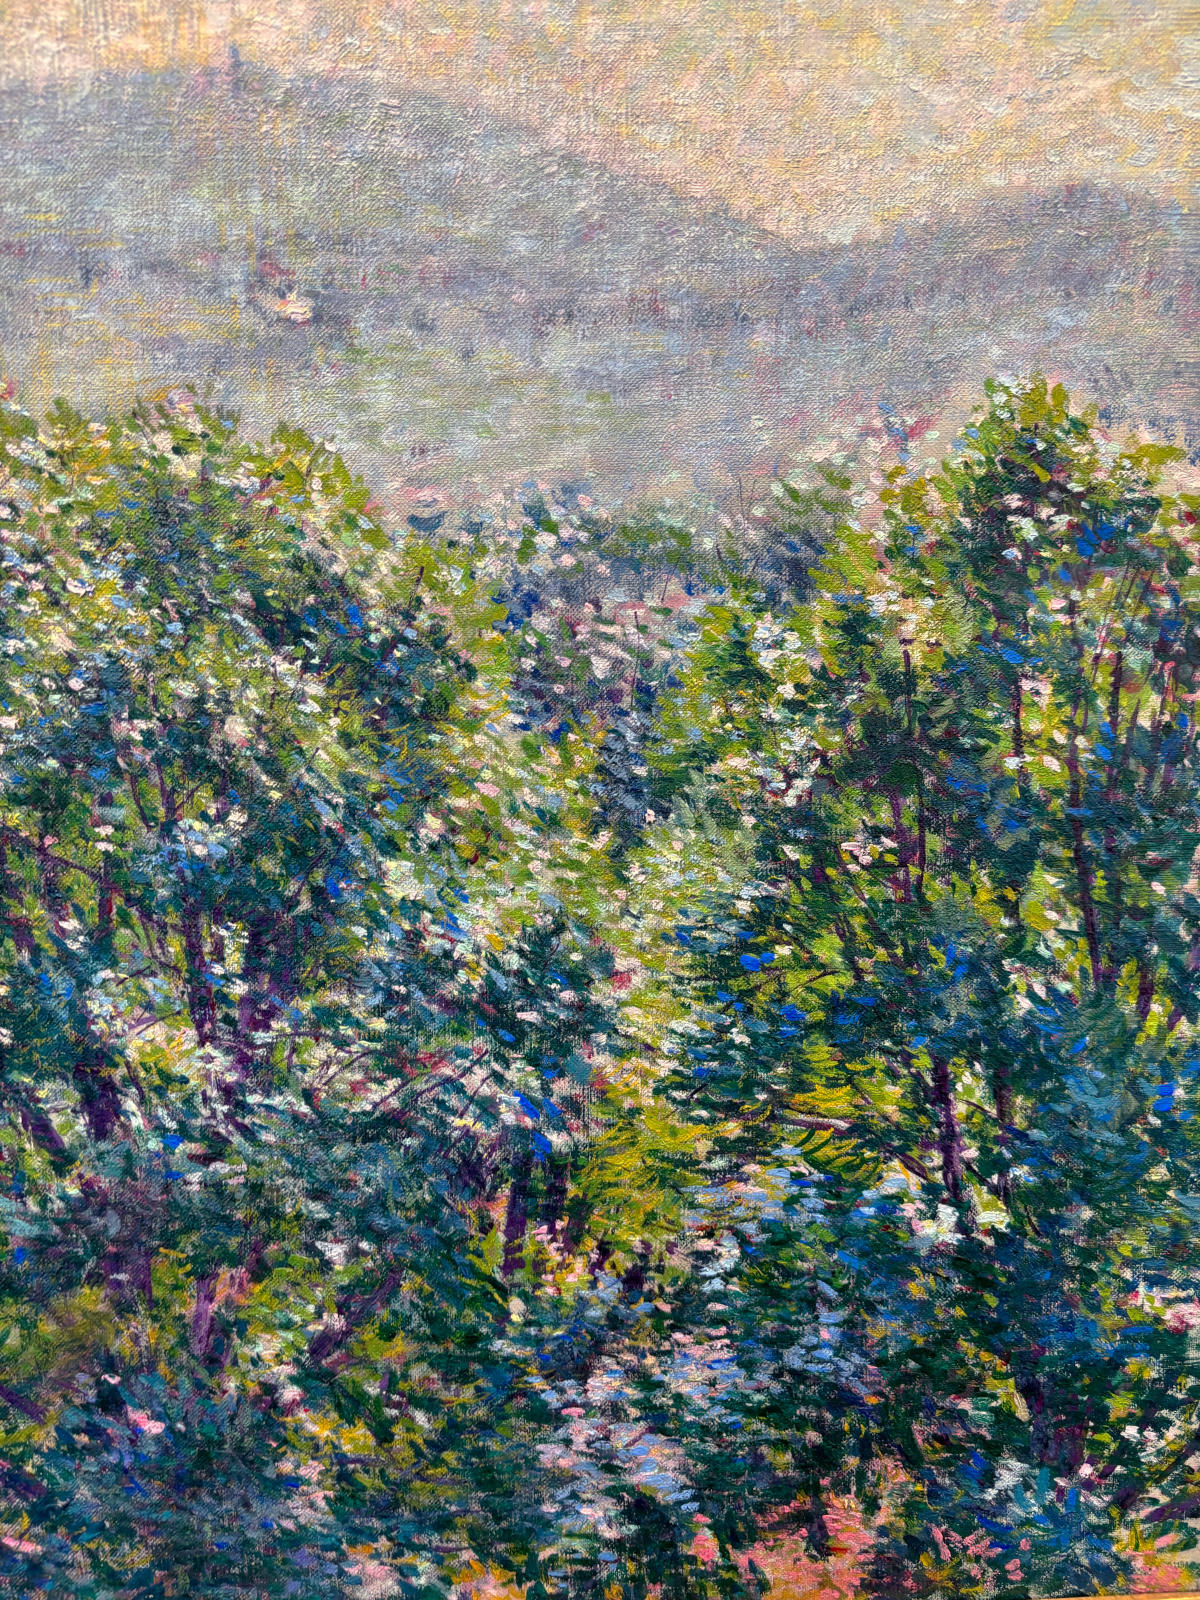 Blue Hills from Artist's Bedroom Window